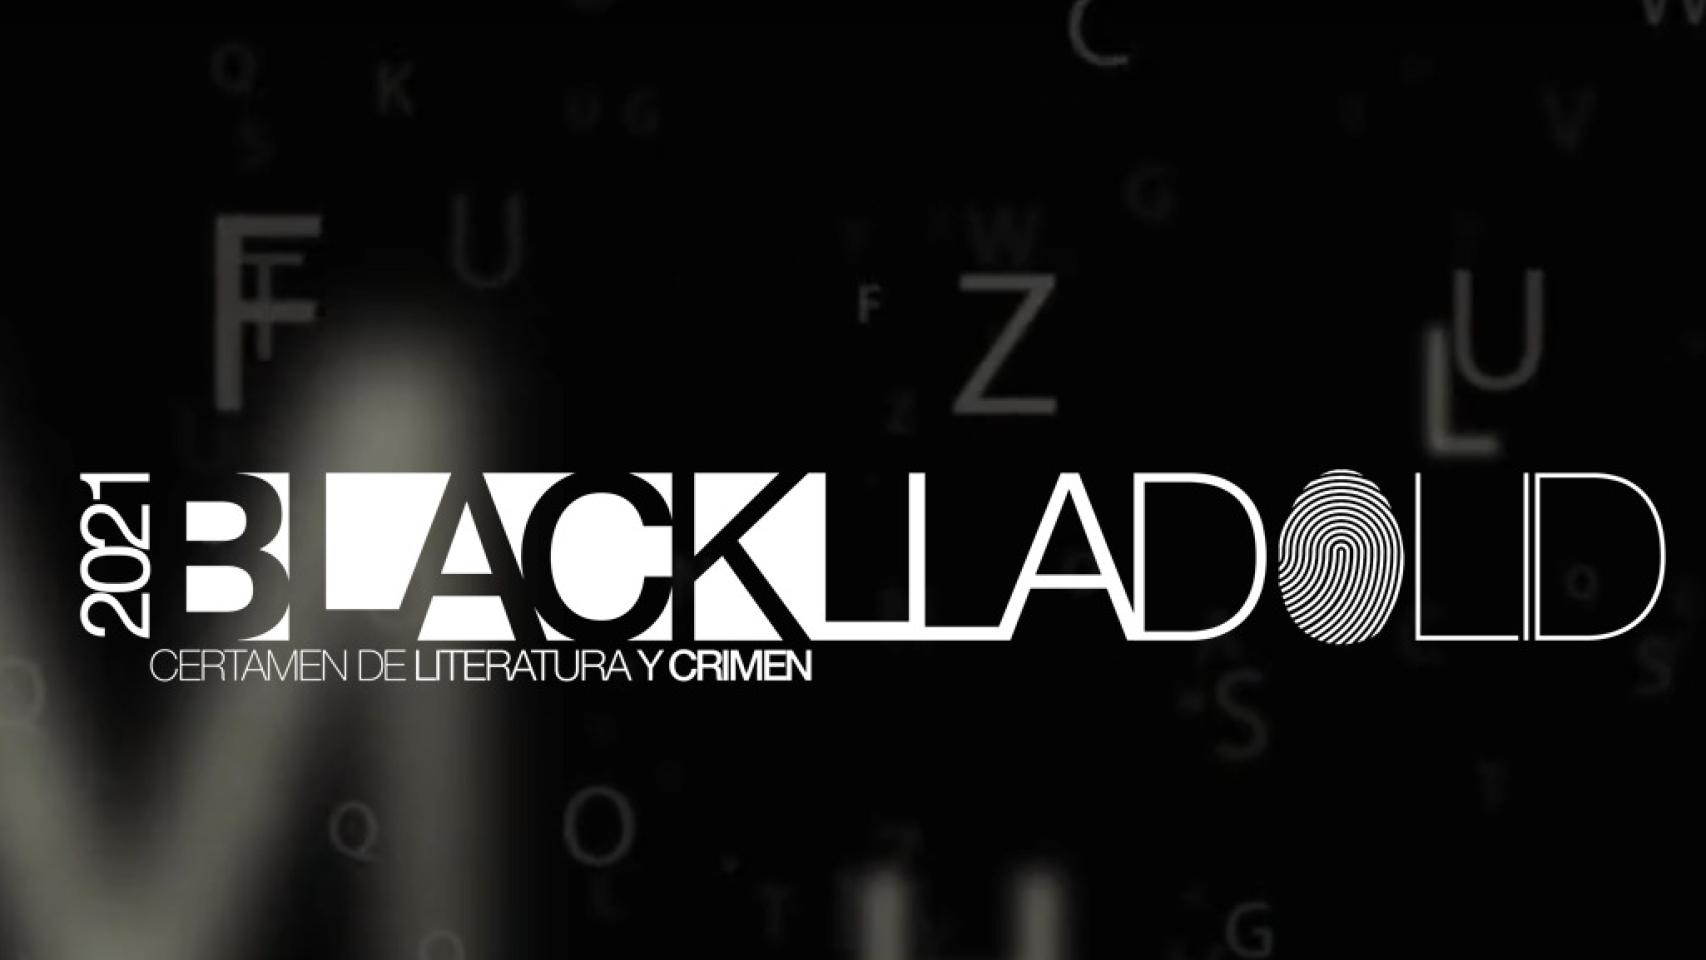 El certamen 'Blacklladolid' cita en Fuensaldaña a los mejores autores  de la literatura negra